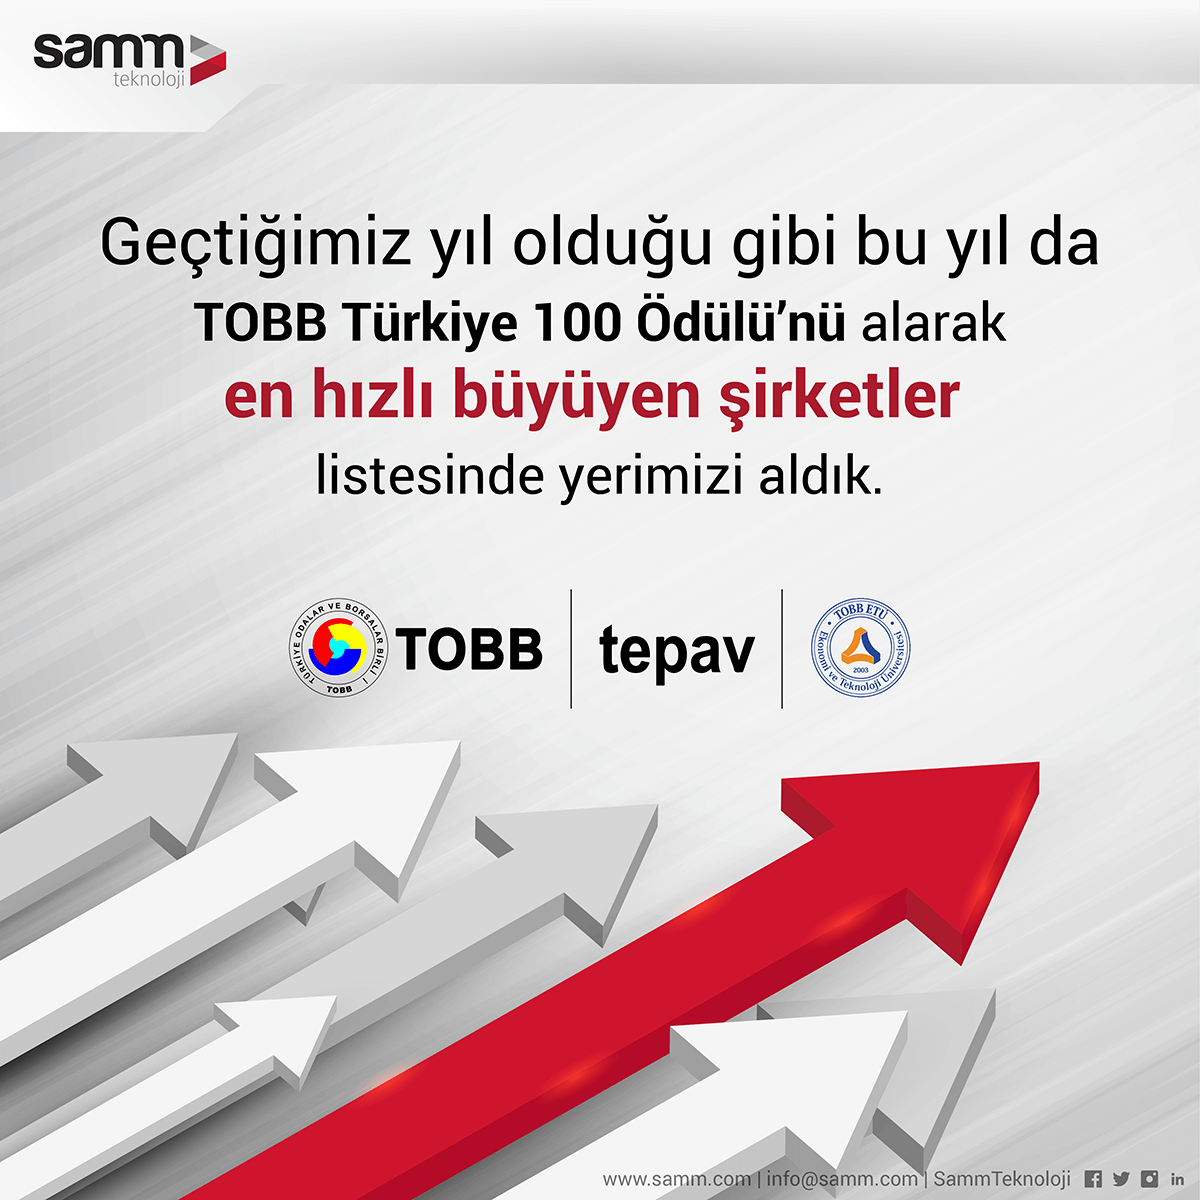 TOBB Türkiye 100 Ödülü SAMM Teknolojinin